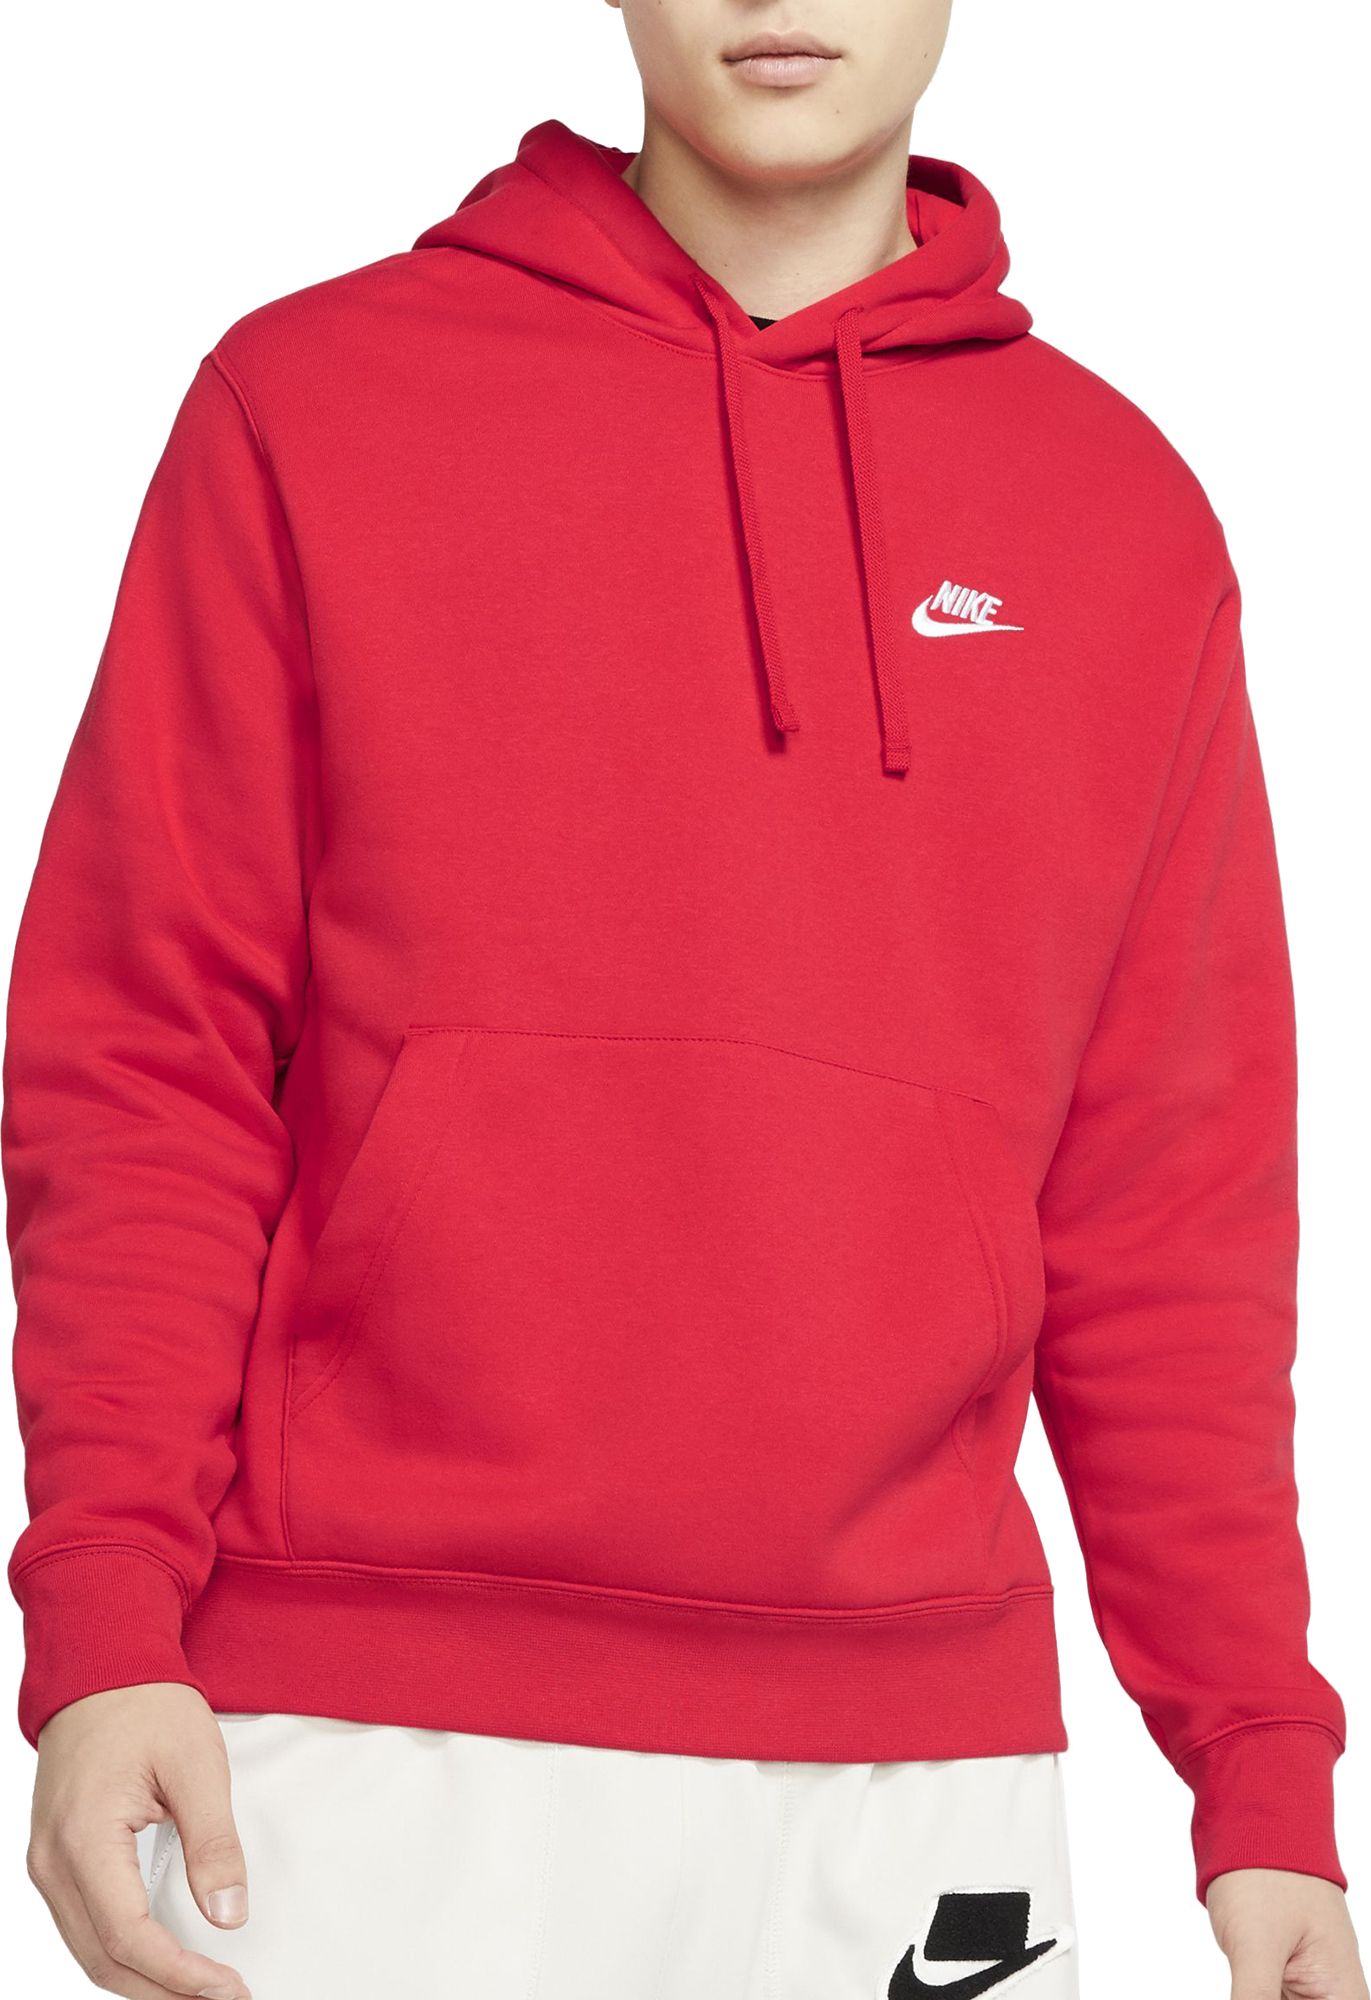 plain red nike hoodie